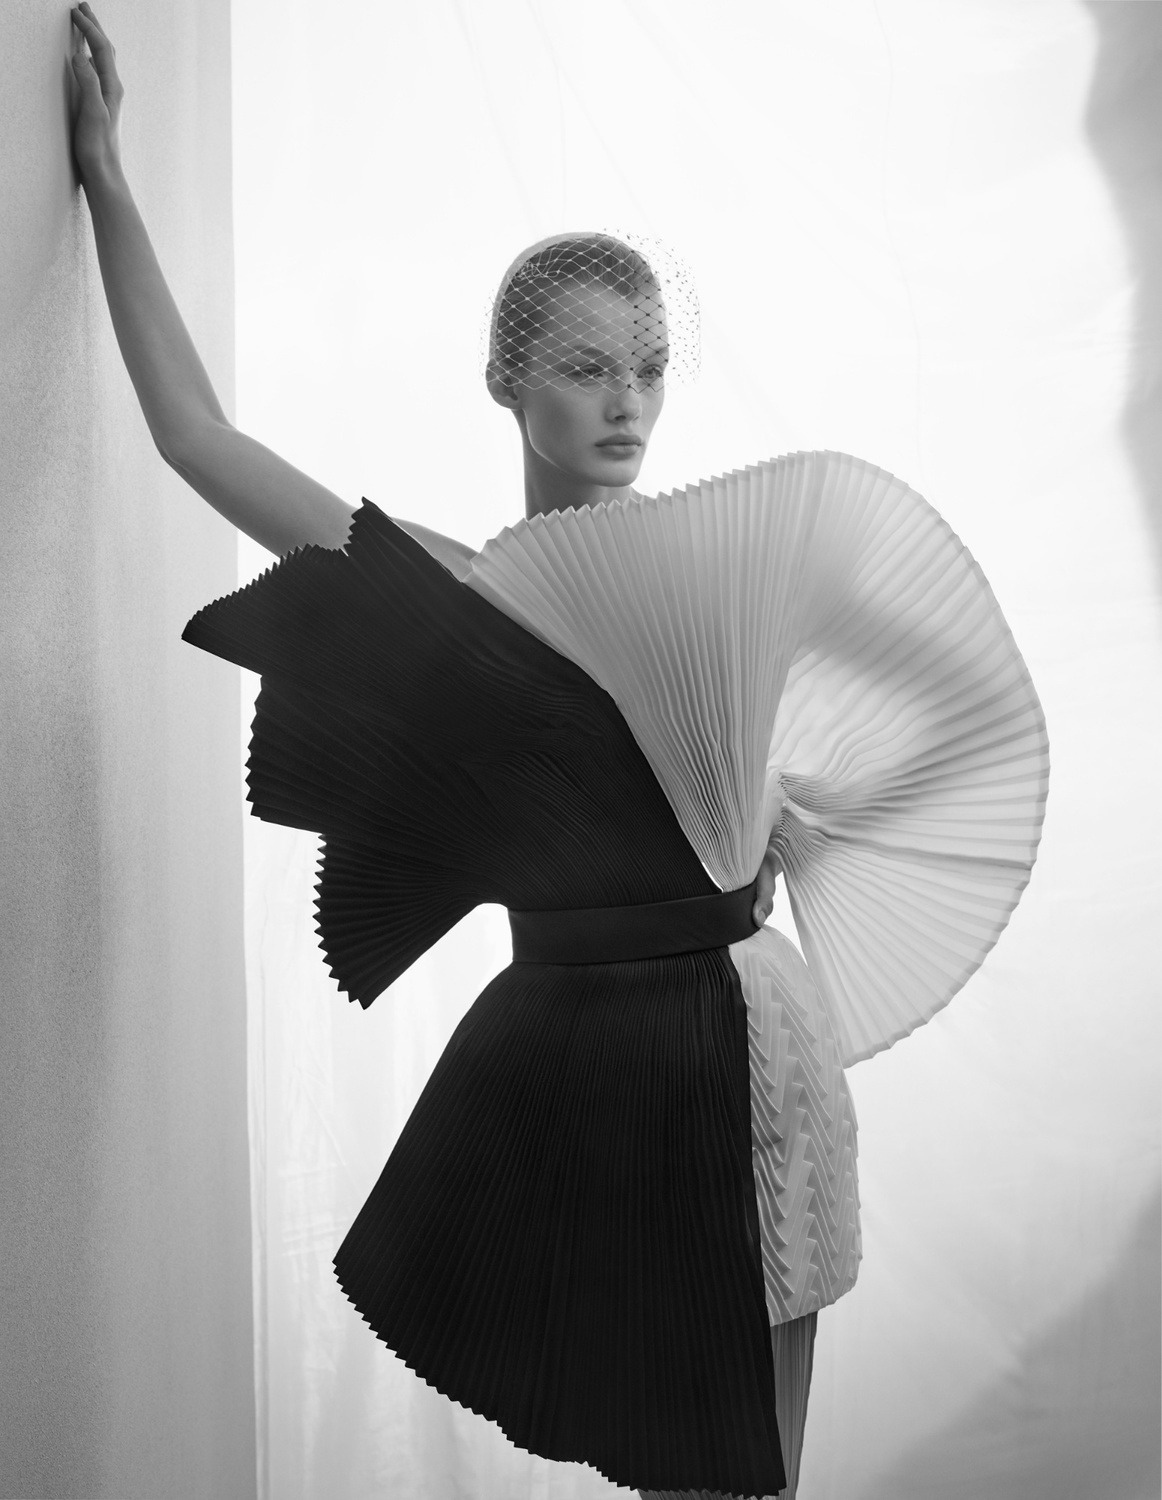 Kris Grikaite by Solve Sundsbo for Vogue China Jan 2019 (11).jpg